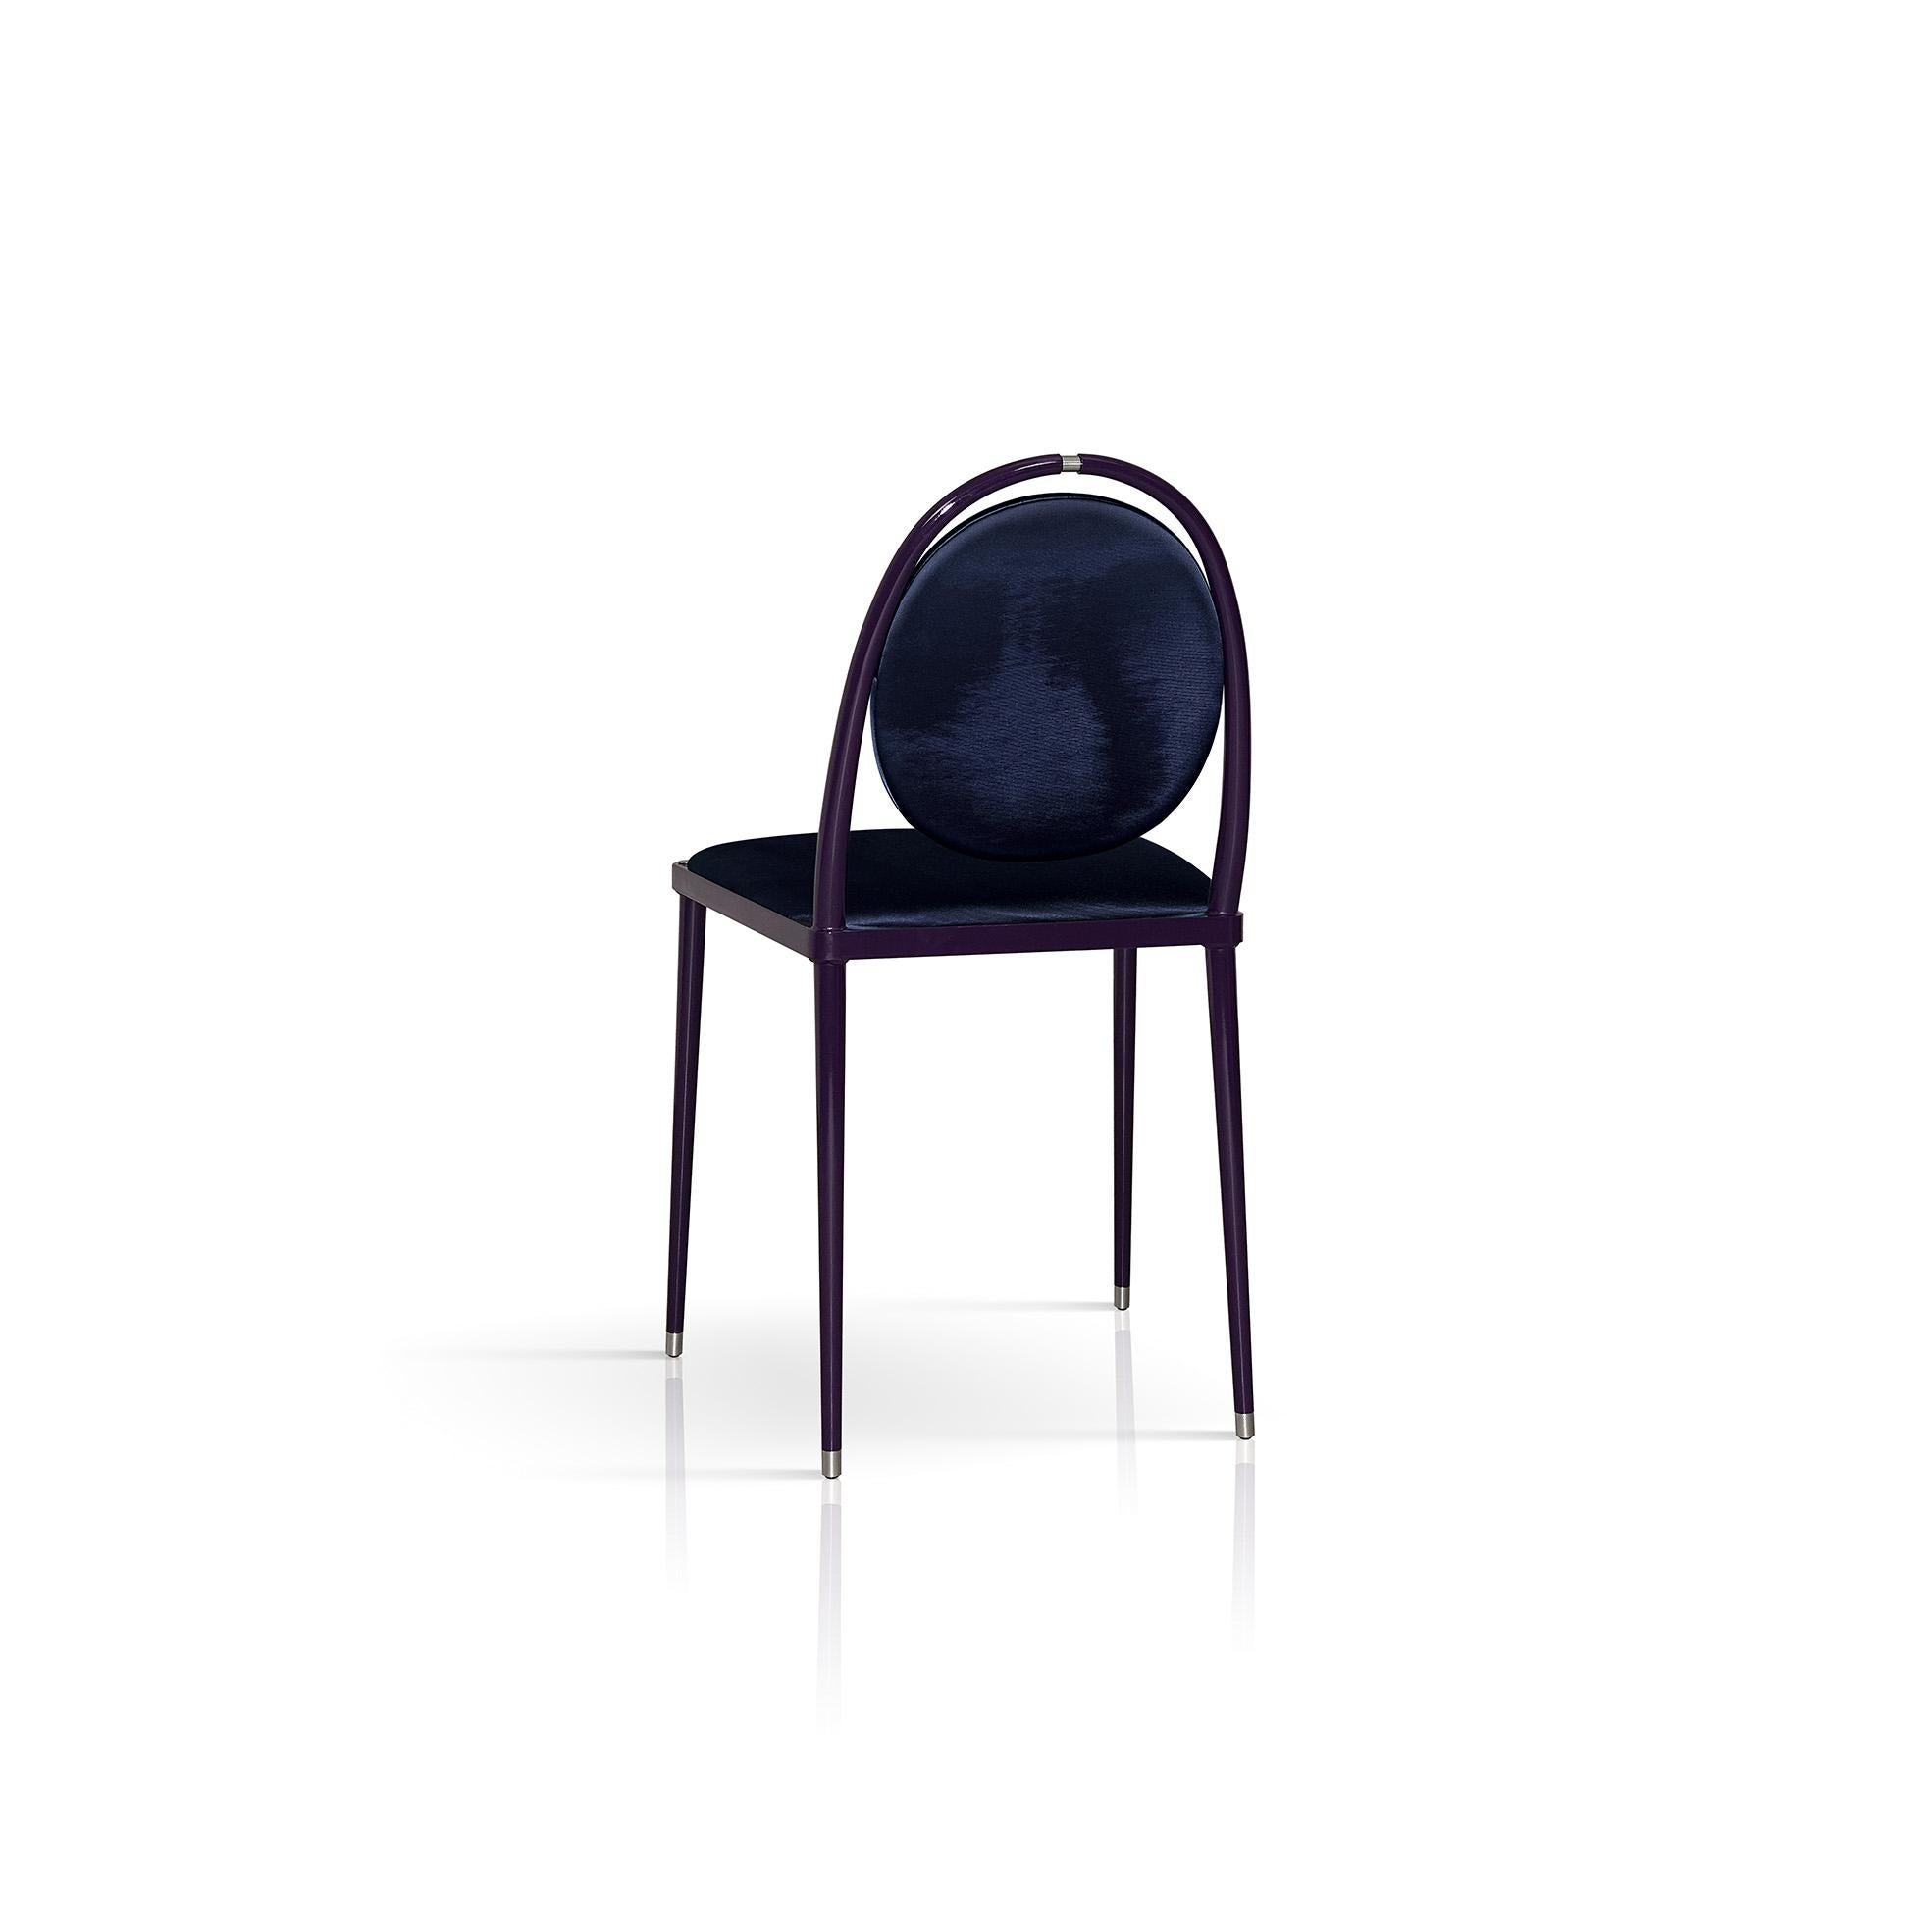 Klassische und moderne Inspiration verschmelzen in diesem raffinierten Stuhl der Serie Balzaretti. Die traditionelle Form mit zeitgemäßen Proportionen verleiht ihm ein charmantes Flair, das sich auch dank der verschiedenen Polstervarianten in die